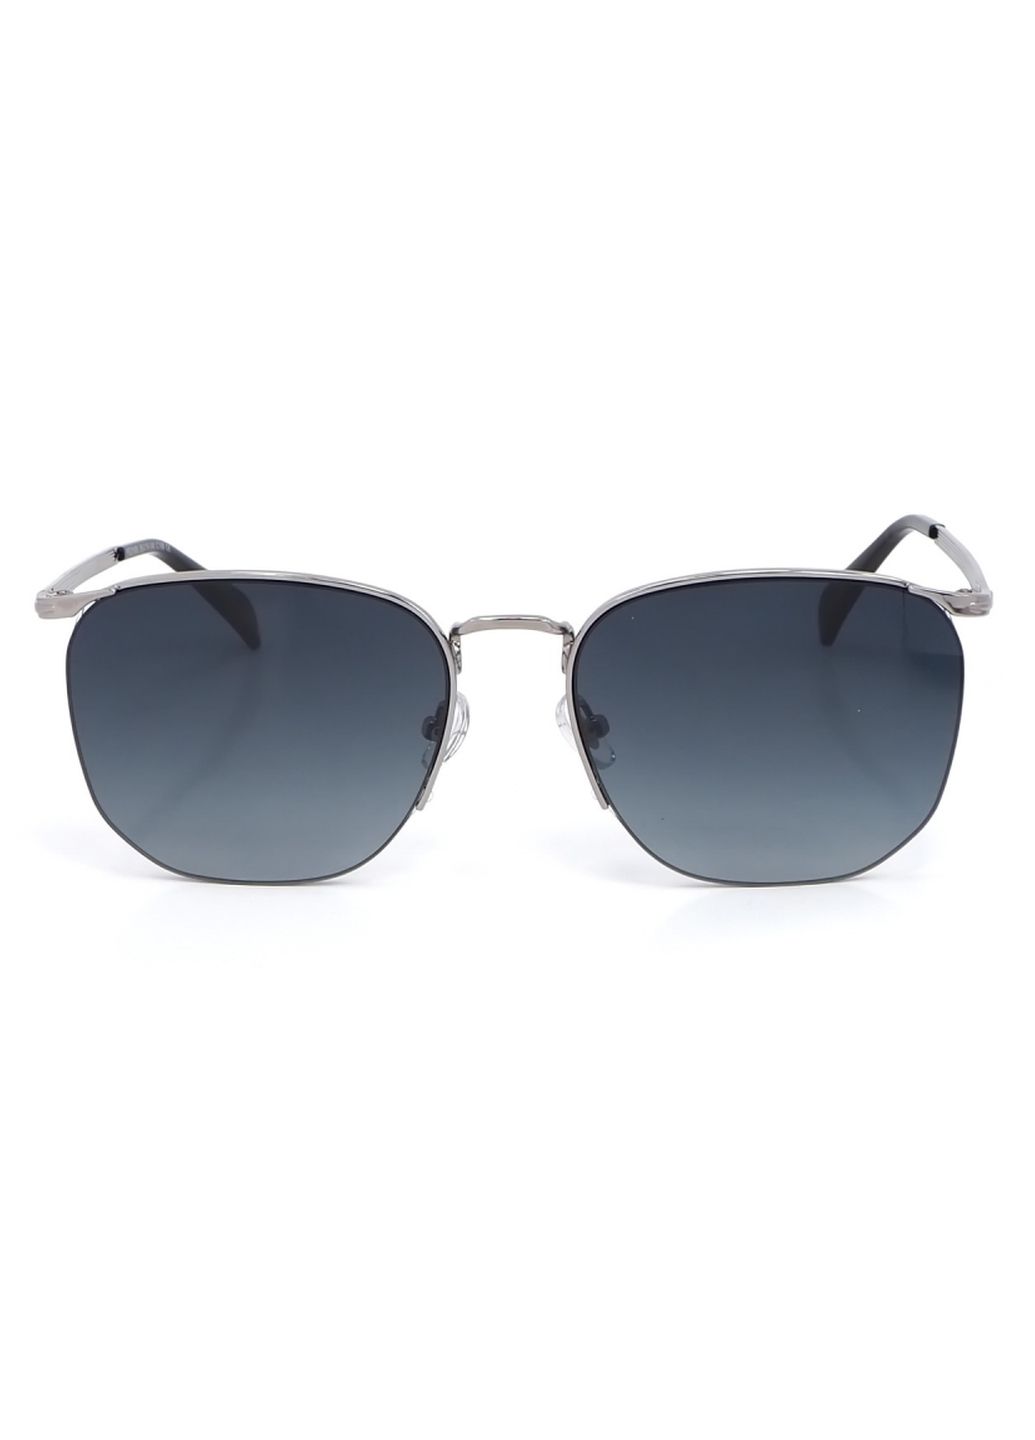 Купить Женские солнцезащитные очки Merlini с поляризацией S31809P 117017 - Серый в интернет-магазине